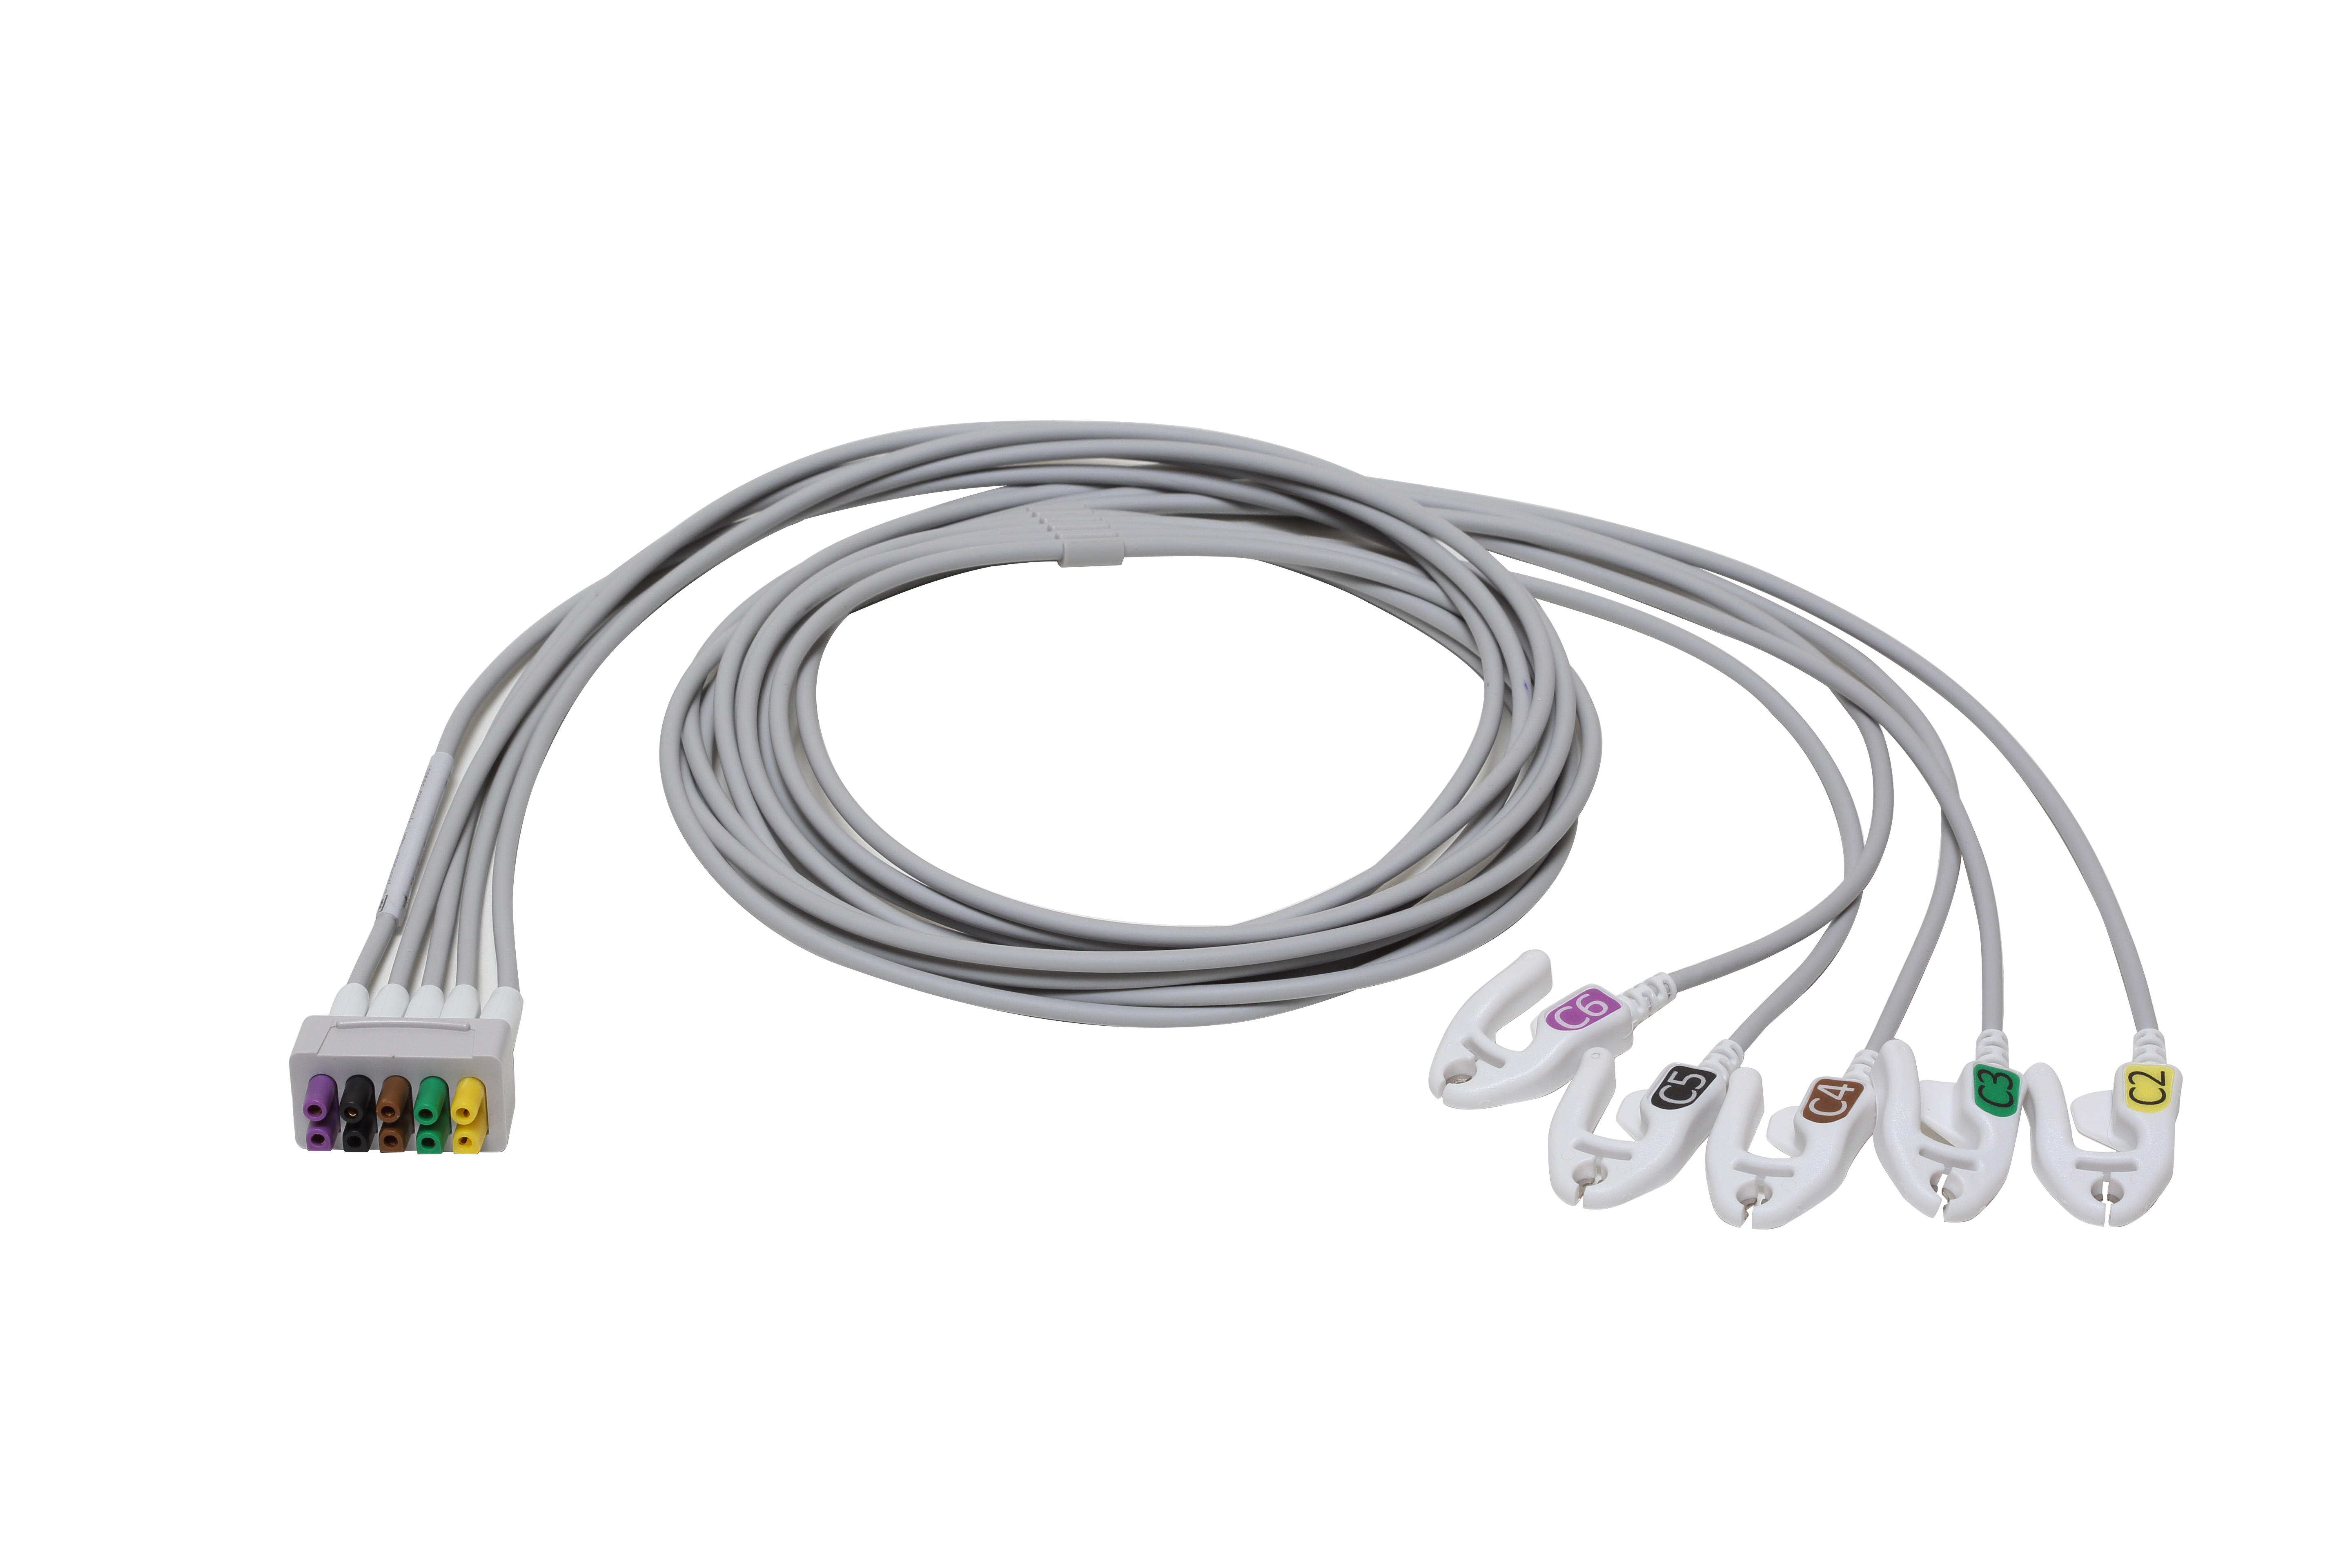 ECG Leadwire set, 5-lead C2-6, Grabber, IEC, 130 cm/ 51 in